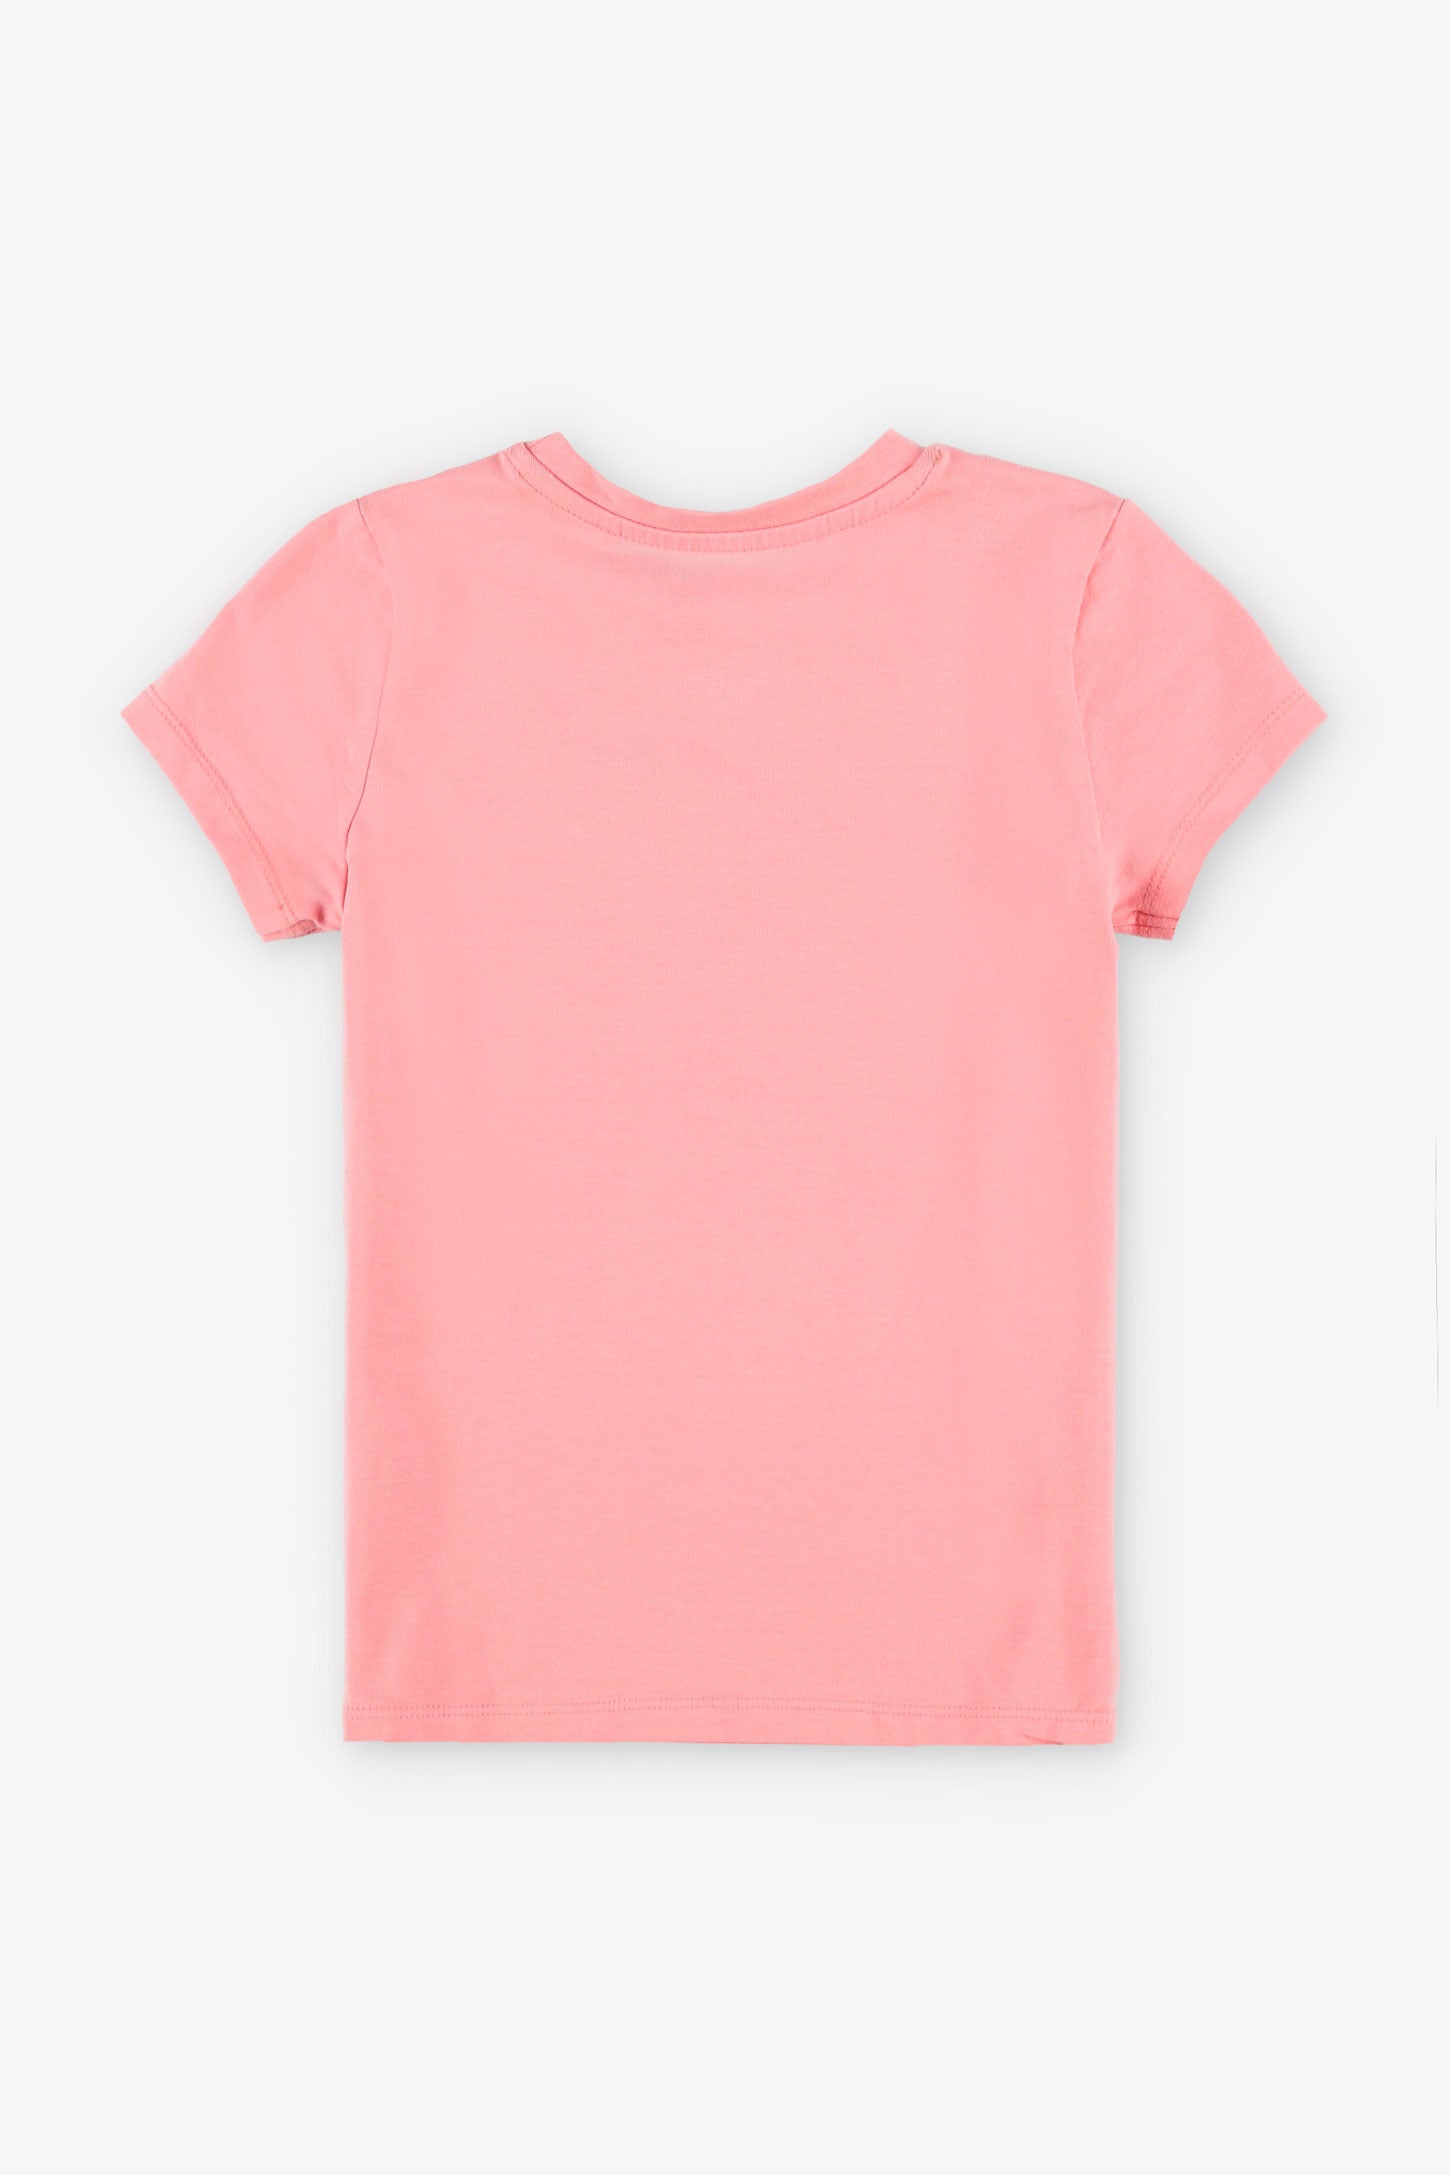 T-shirt imprimé en coton, 2/20$ - Enfant fille && ROSE